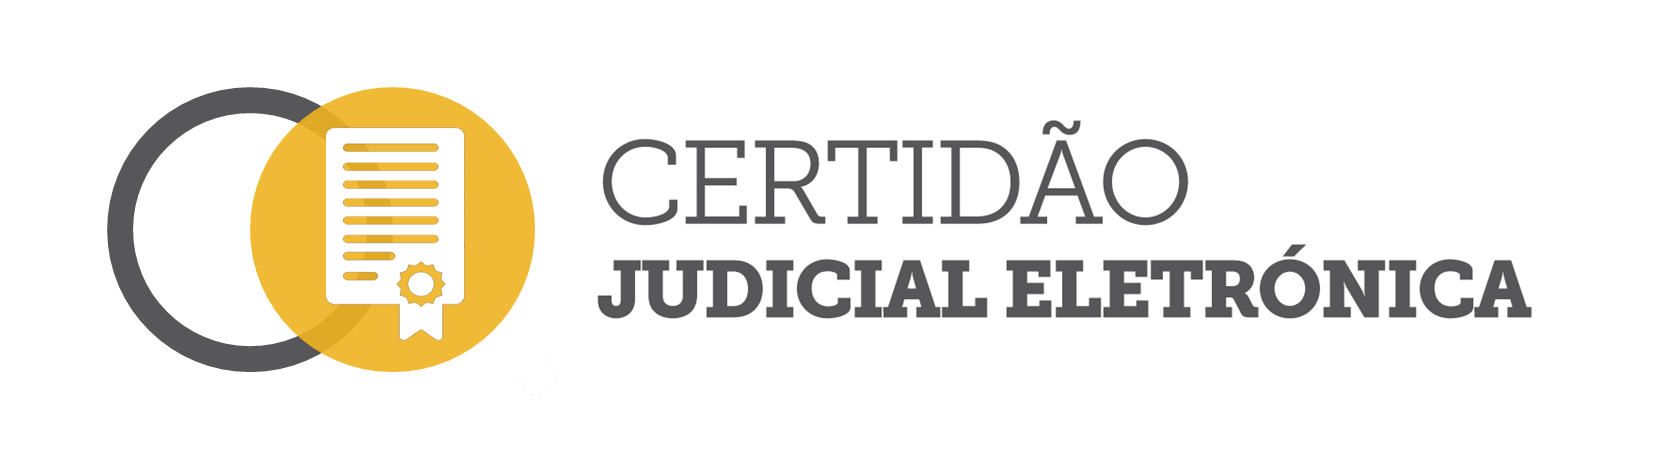 Certidão Judicial Eletrónica